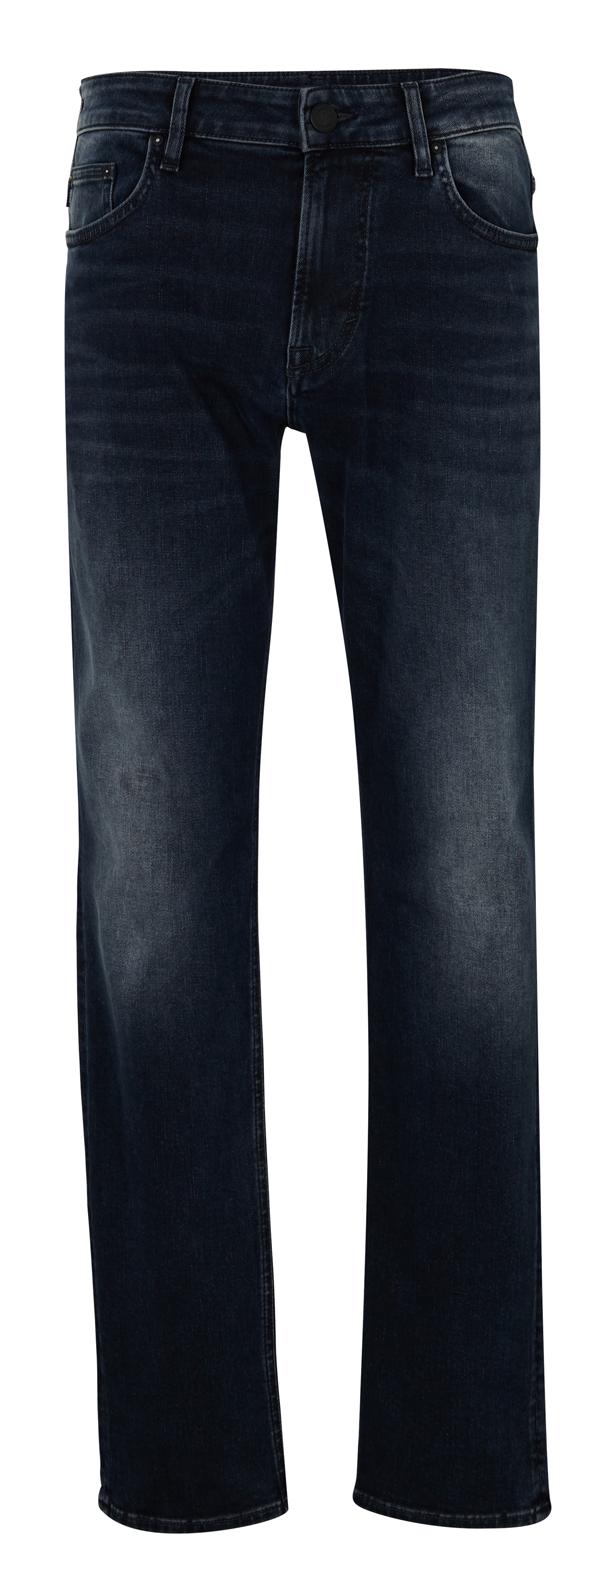 JOOP! Jeans 15 JJD-02Mitch 10013 online kaufen